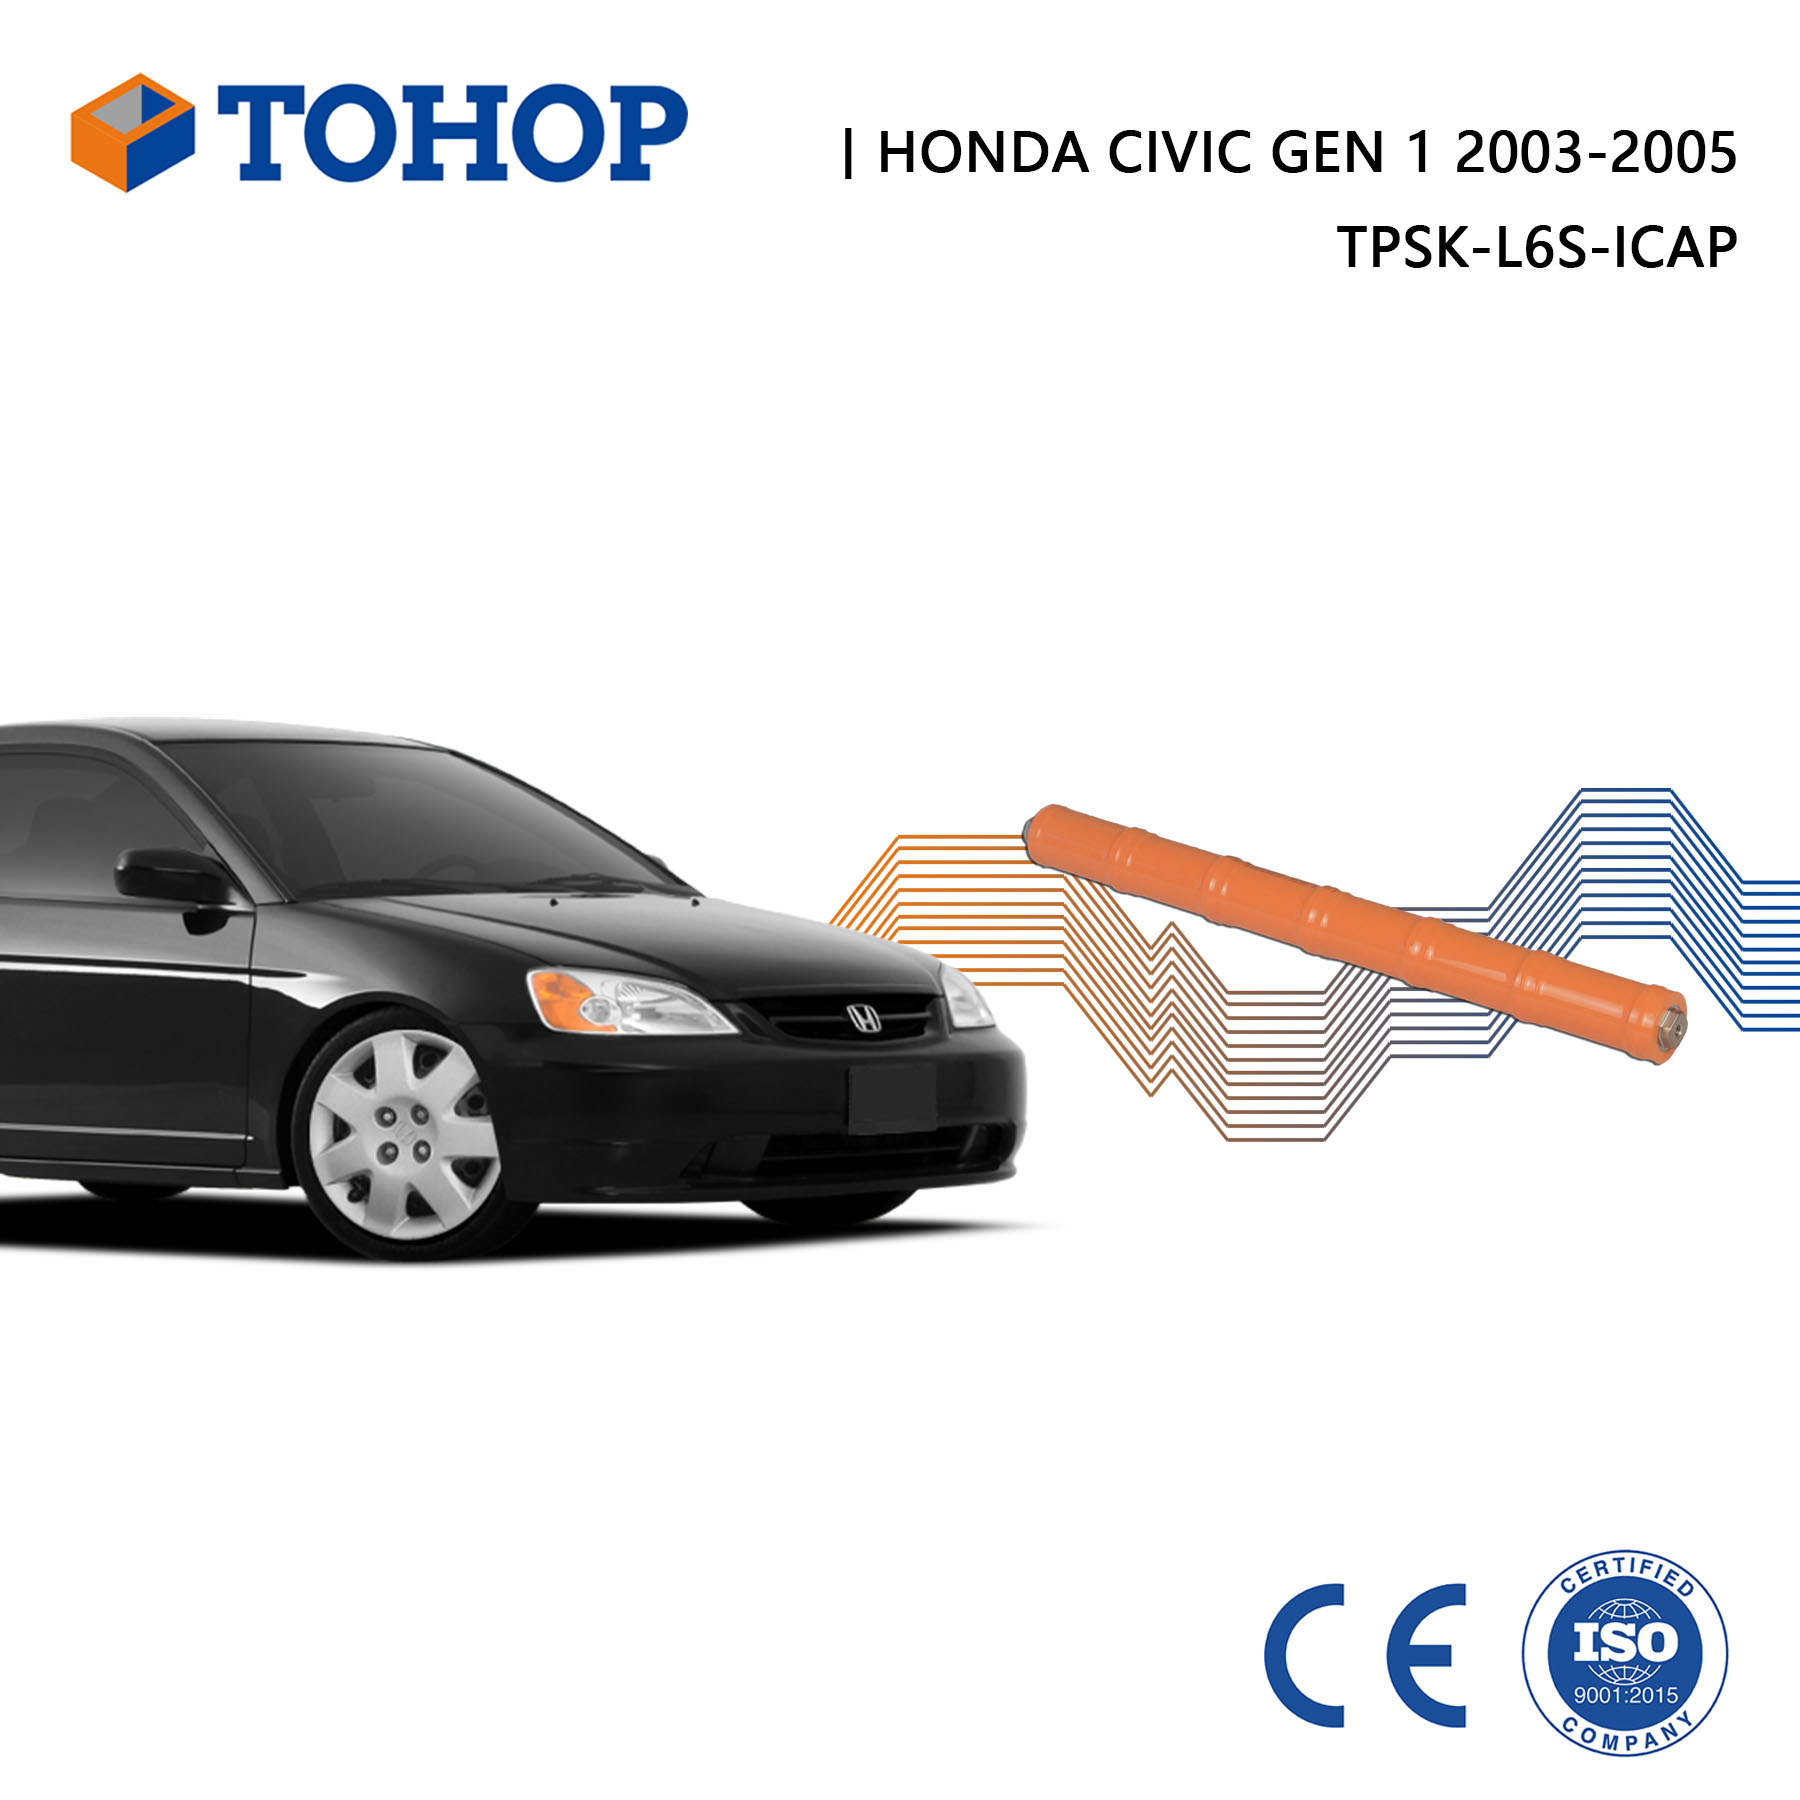 Honda Civic Gen 1 Hybrid Batter